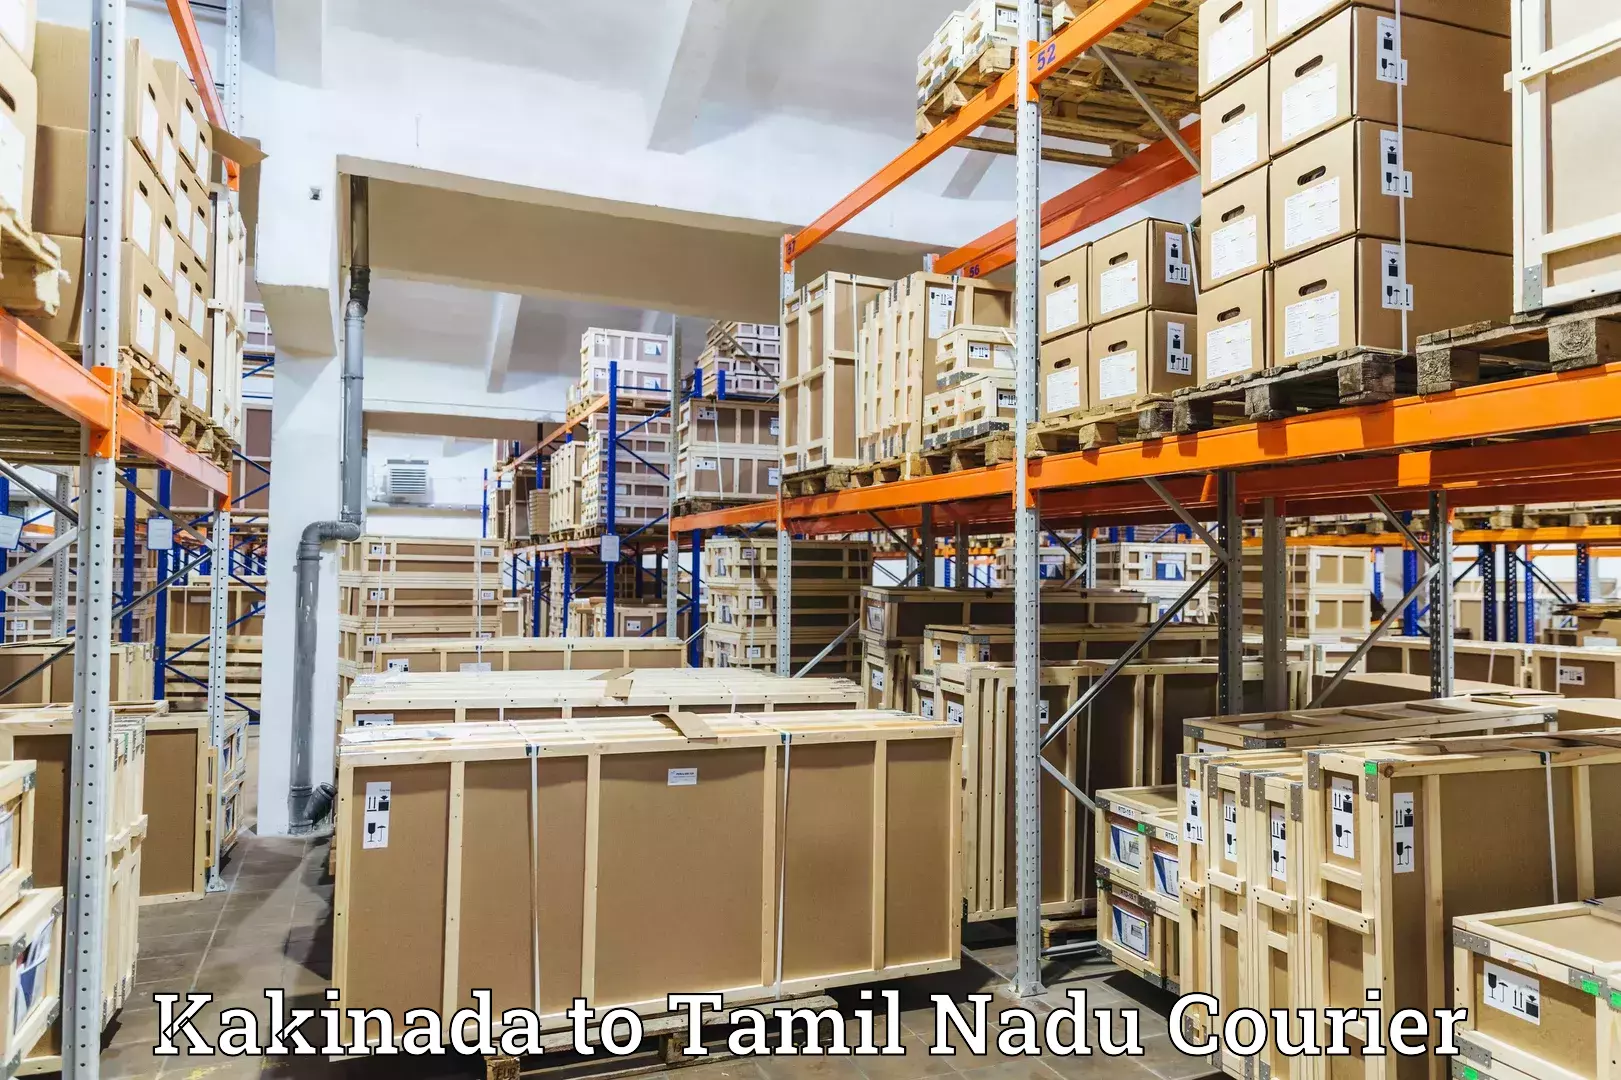 High-speed parcel service Kakinada to Coonoor